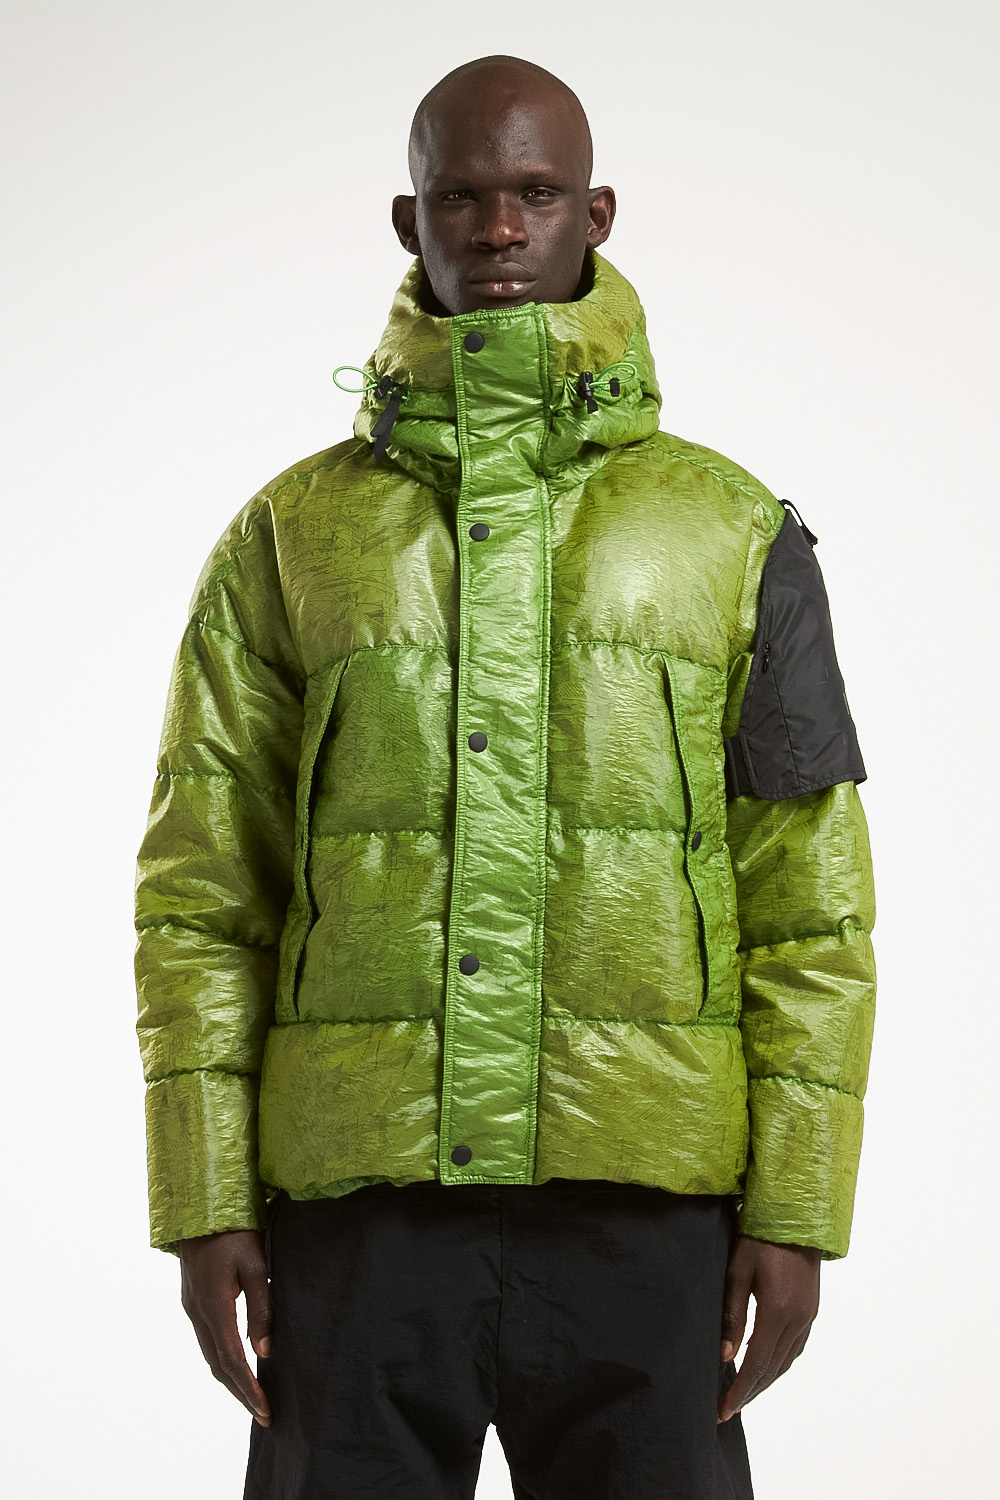 デイリー スタイル 公式 Eaphi leaf jacquard quilting jacket ladara.id